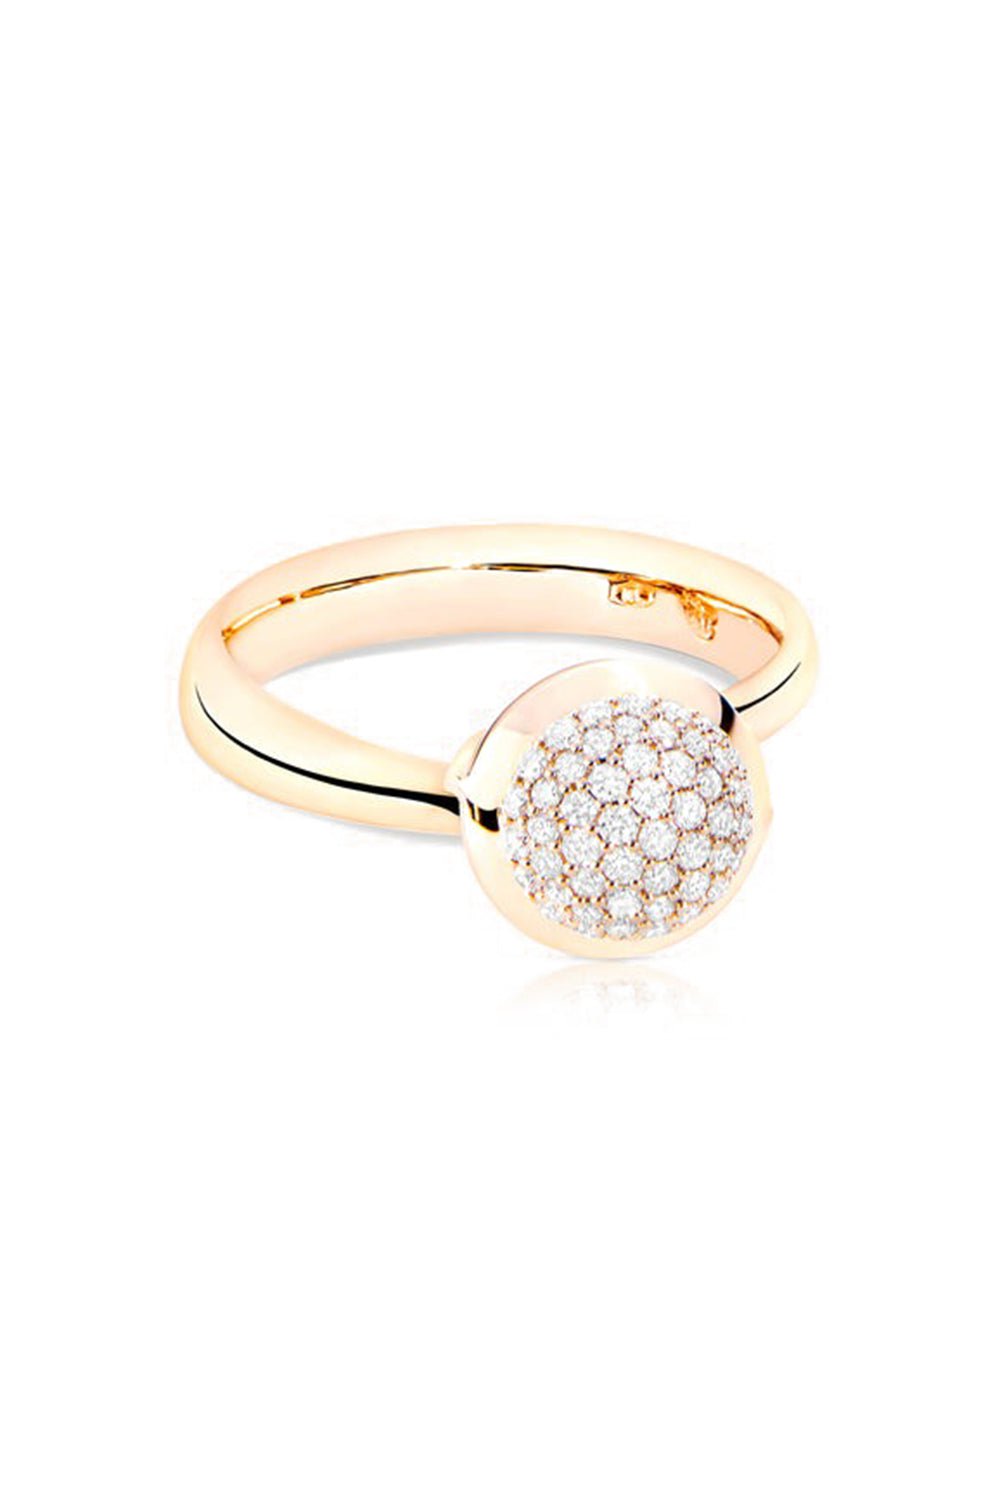 TAMARA COMOLLI-Small Pavé Diamond Bouton Ring-ROSE GOLD